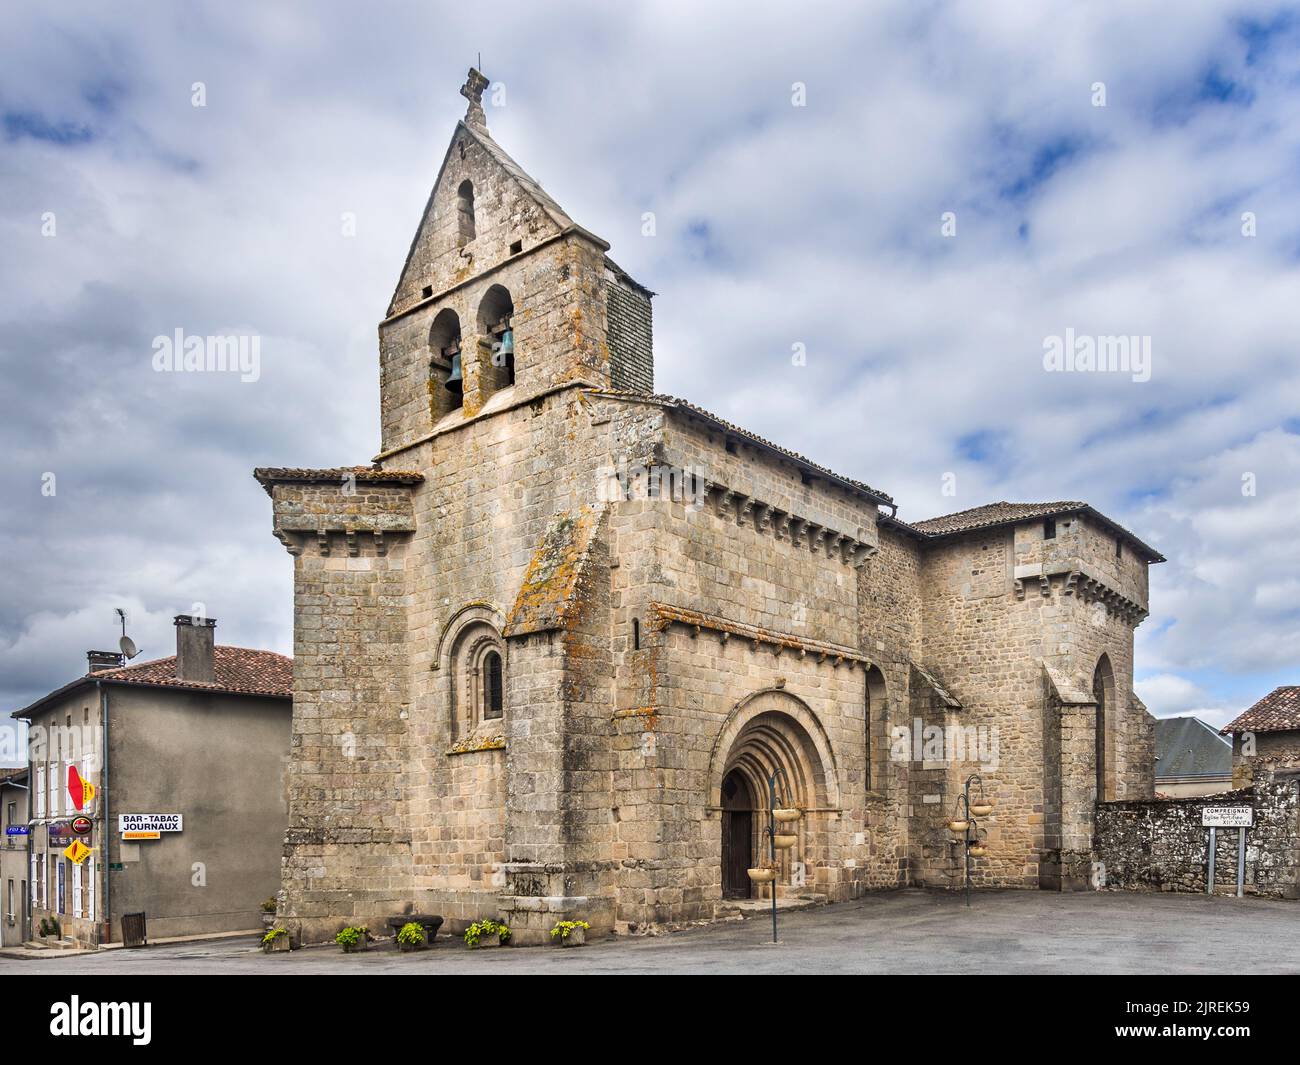 12 - 16 century fortified Saint-Martin-de-Tours church, Compreignac, Haute-Vienne (87), France. Stock Photo